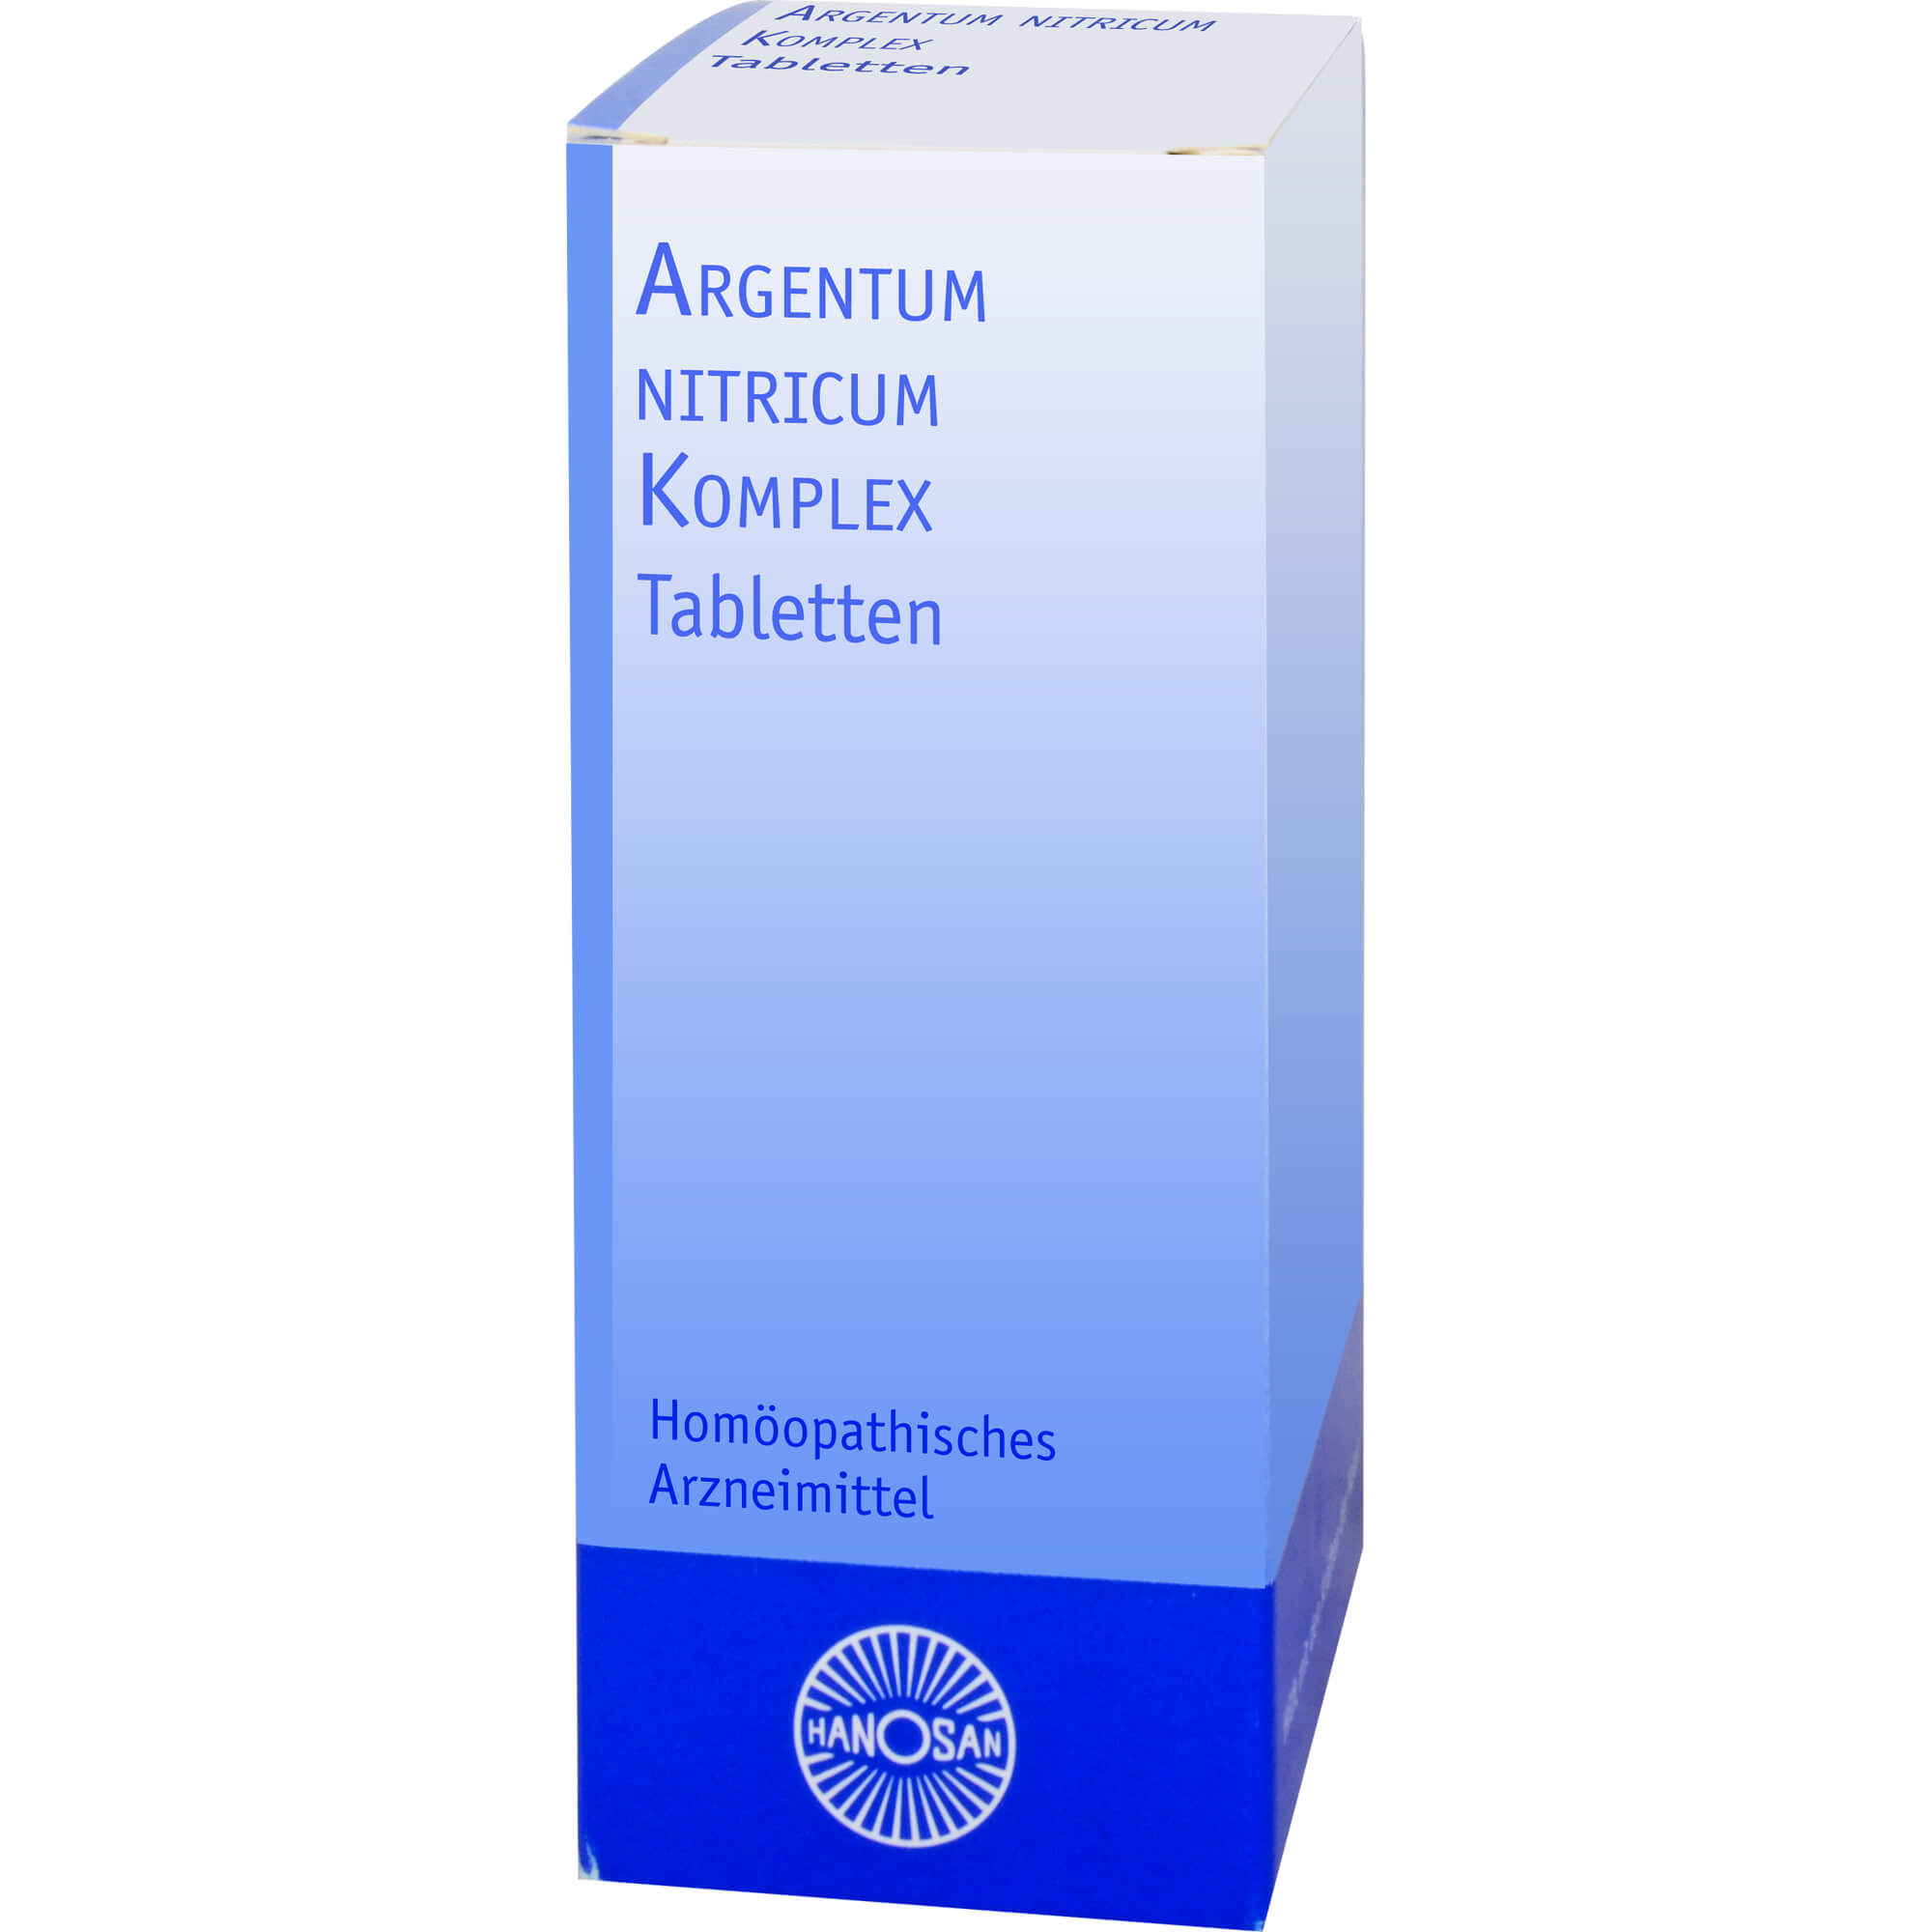 ARGENTUM NITRICUM KOMPLEX Hanosan Tabletten